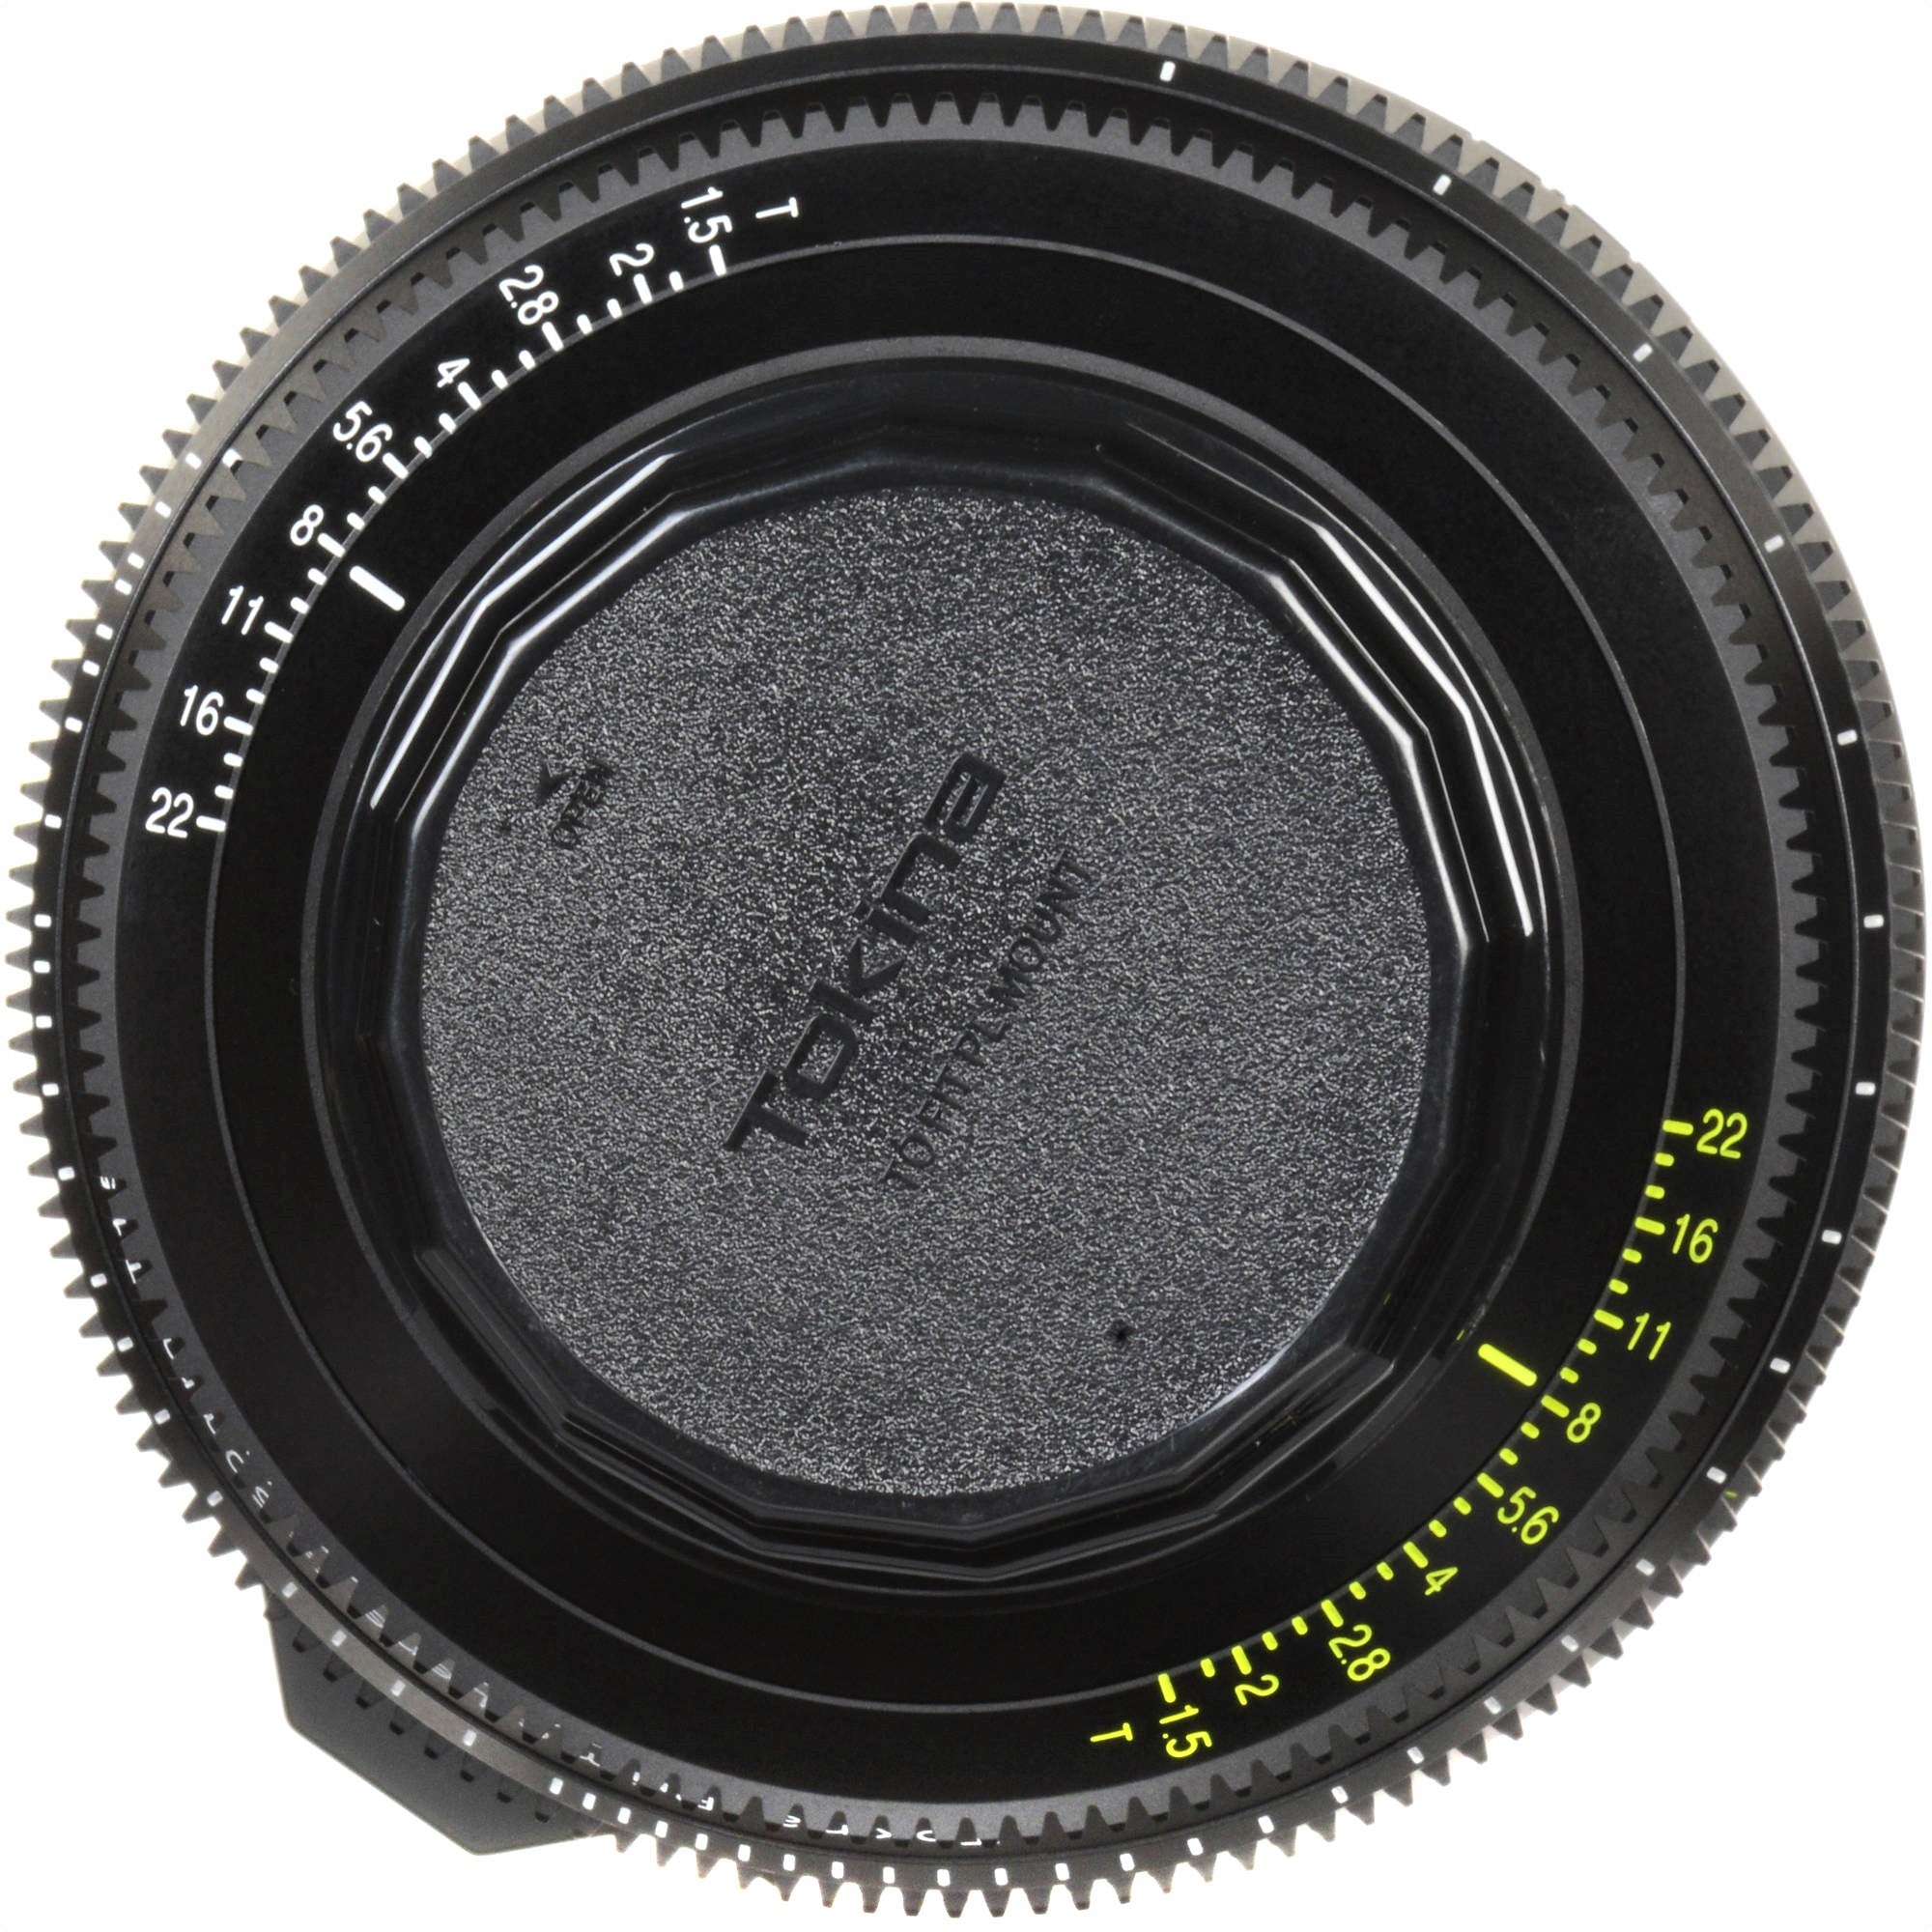 Tokina 50mm T1.5 Cinema Vista Prime Lens (PL Mount) in a Back Close-Up View